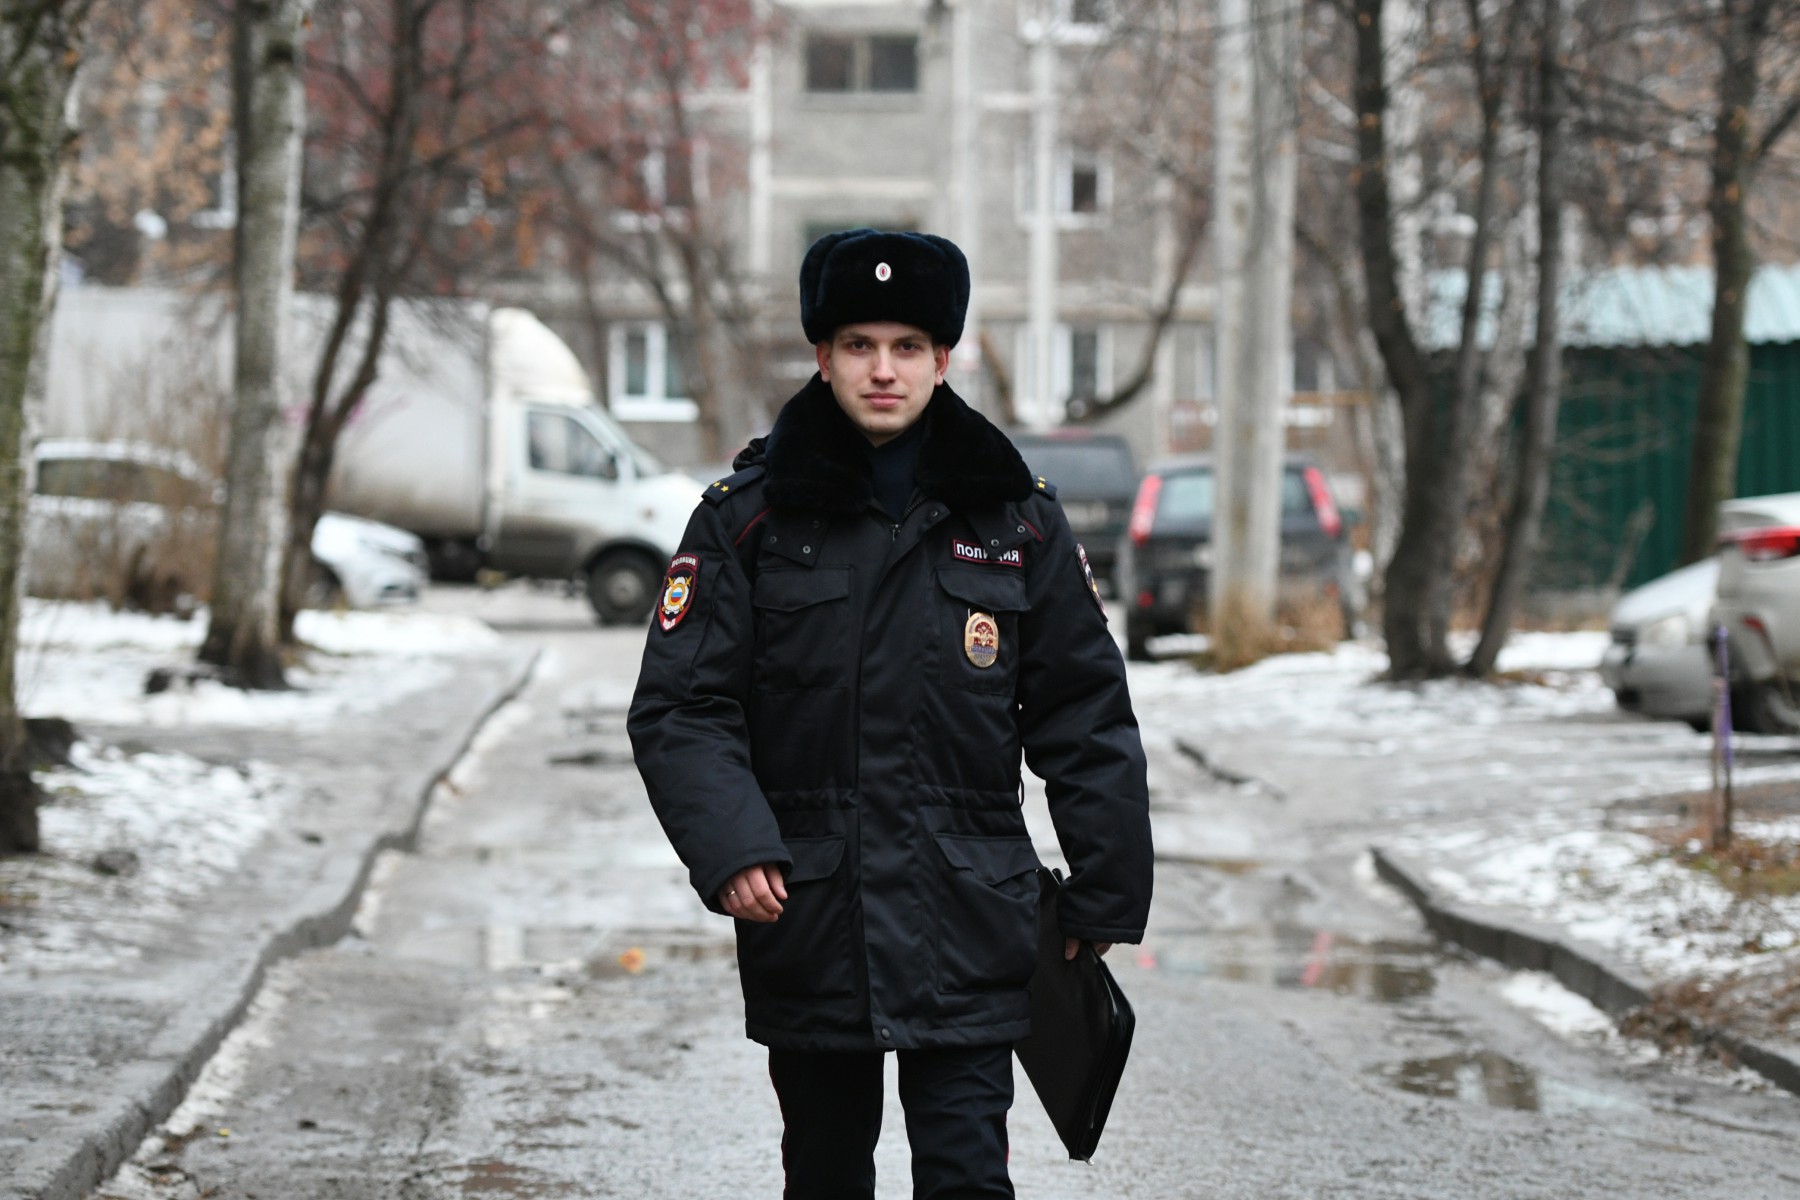 Александр Ильинских работает на должности участкового всего полтора года, пришел в полицию после училища и армии. Фото Владимира Коцюбы-Белых